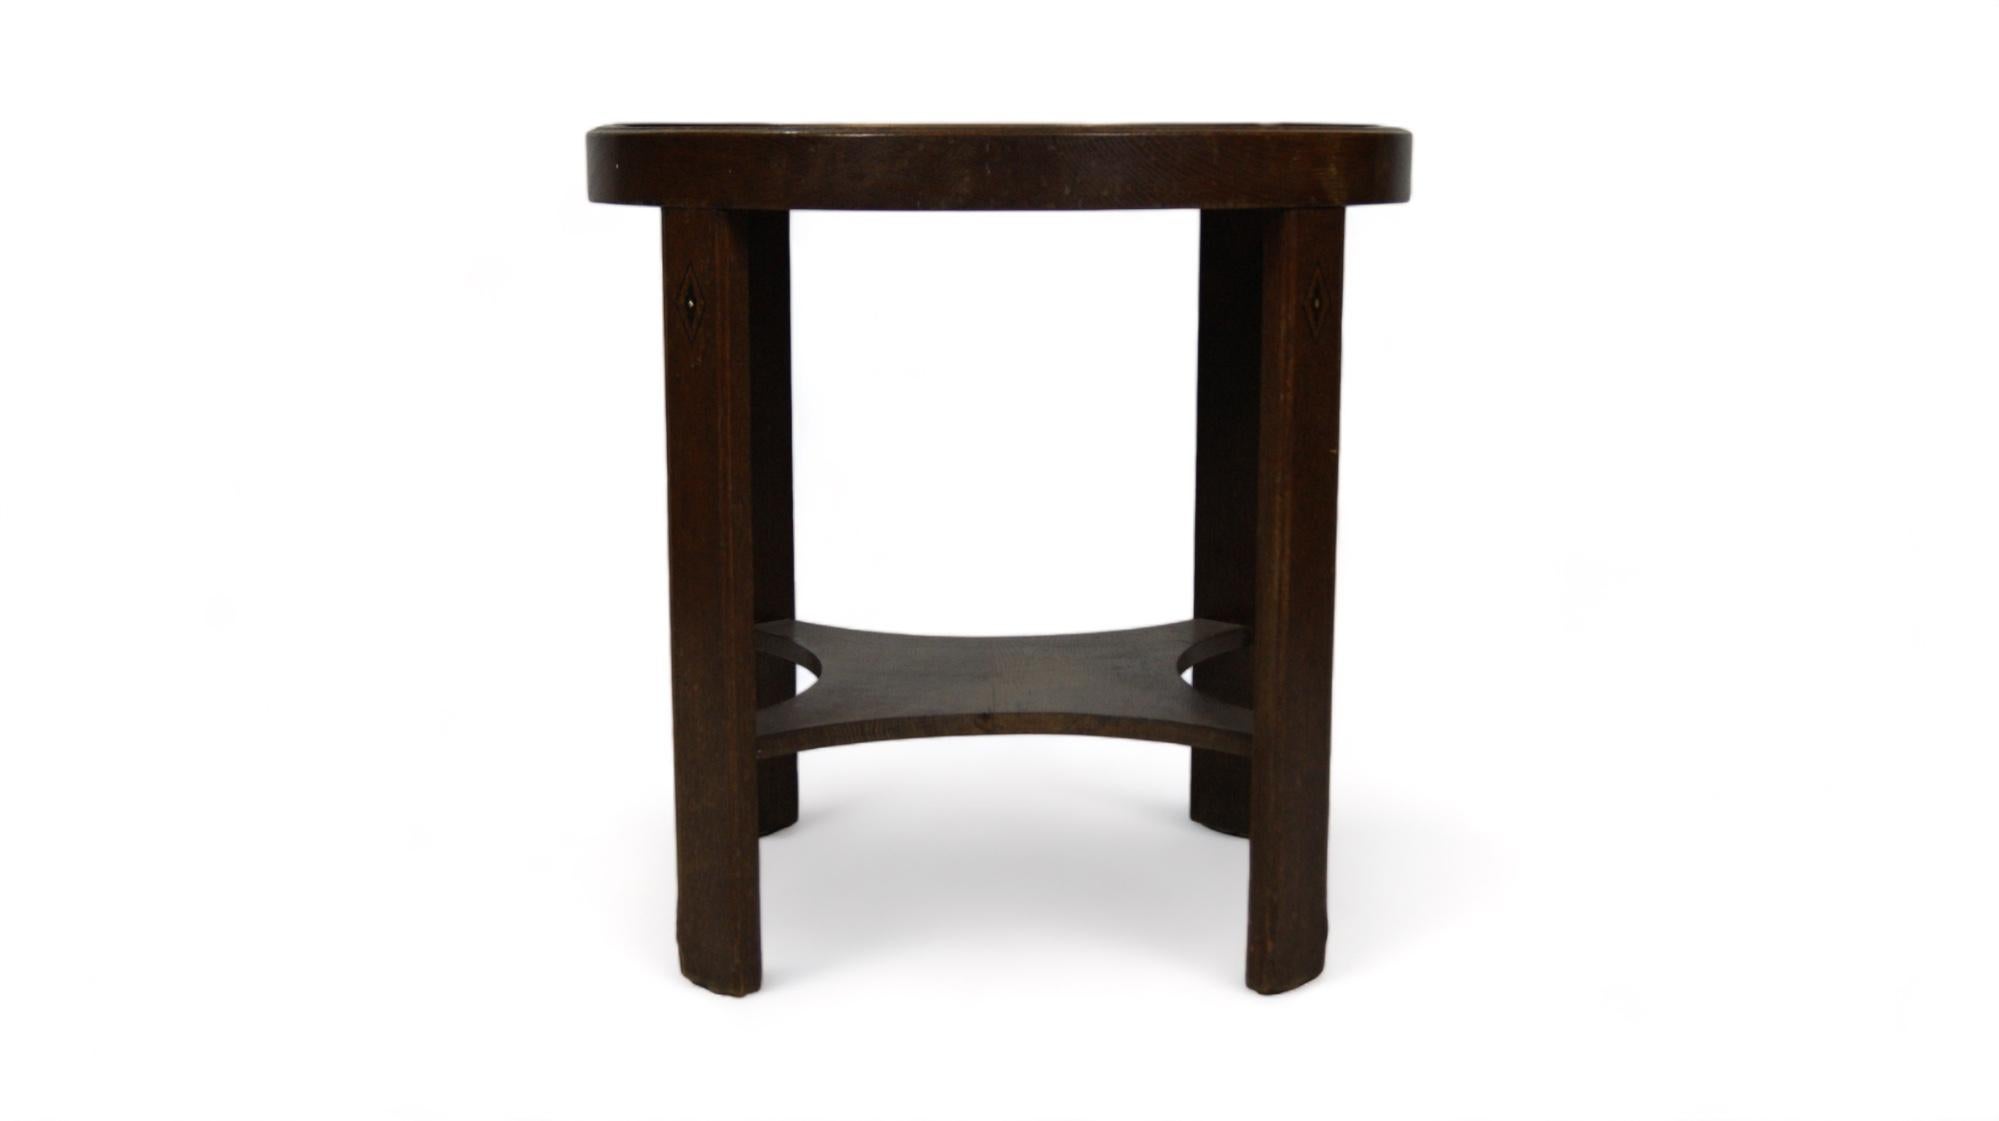 Das Design dieses Tisches verbindet die Wärme des Holzes mit der Robustheit des Metalls und schafft ein harmonisches Gleichgewicht zwischen Klassik und Funktionalität.

Das Holz in satten, tiefen Tönen zeigt die Patina der Zeit und offenbart